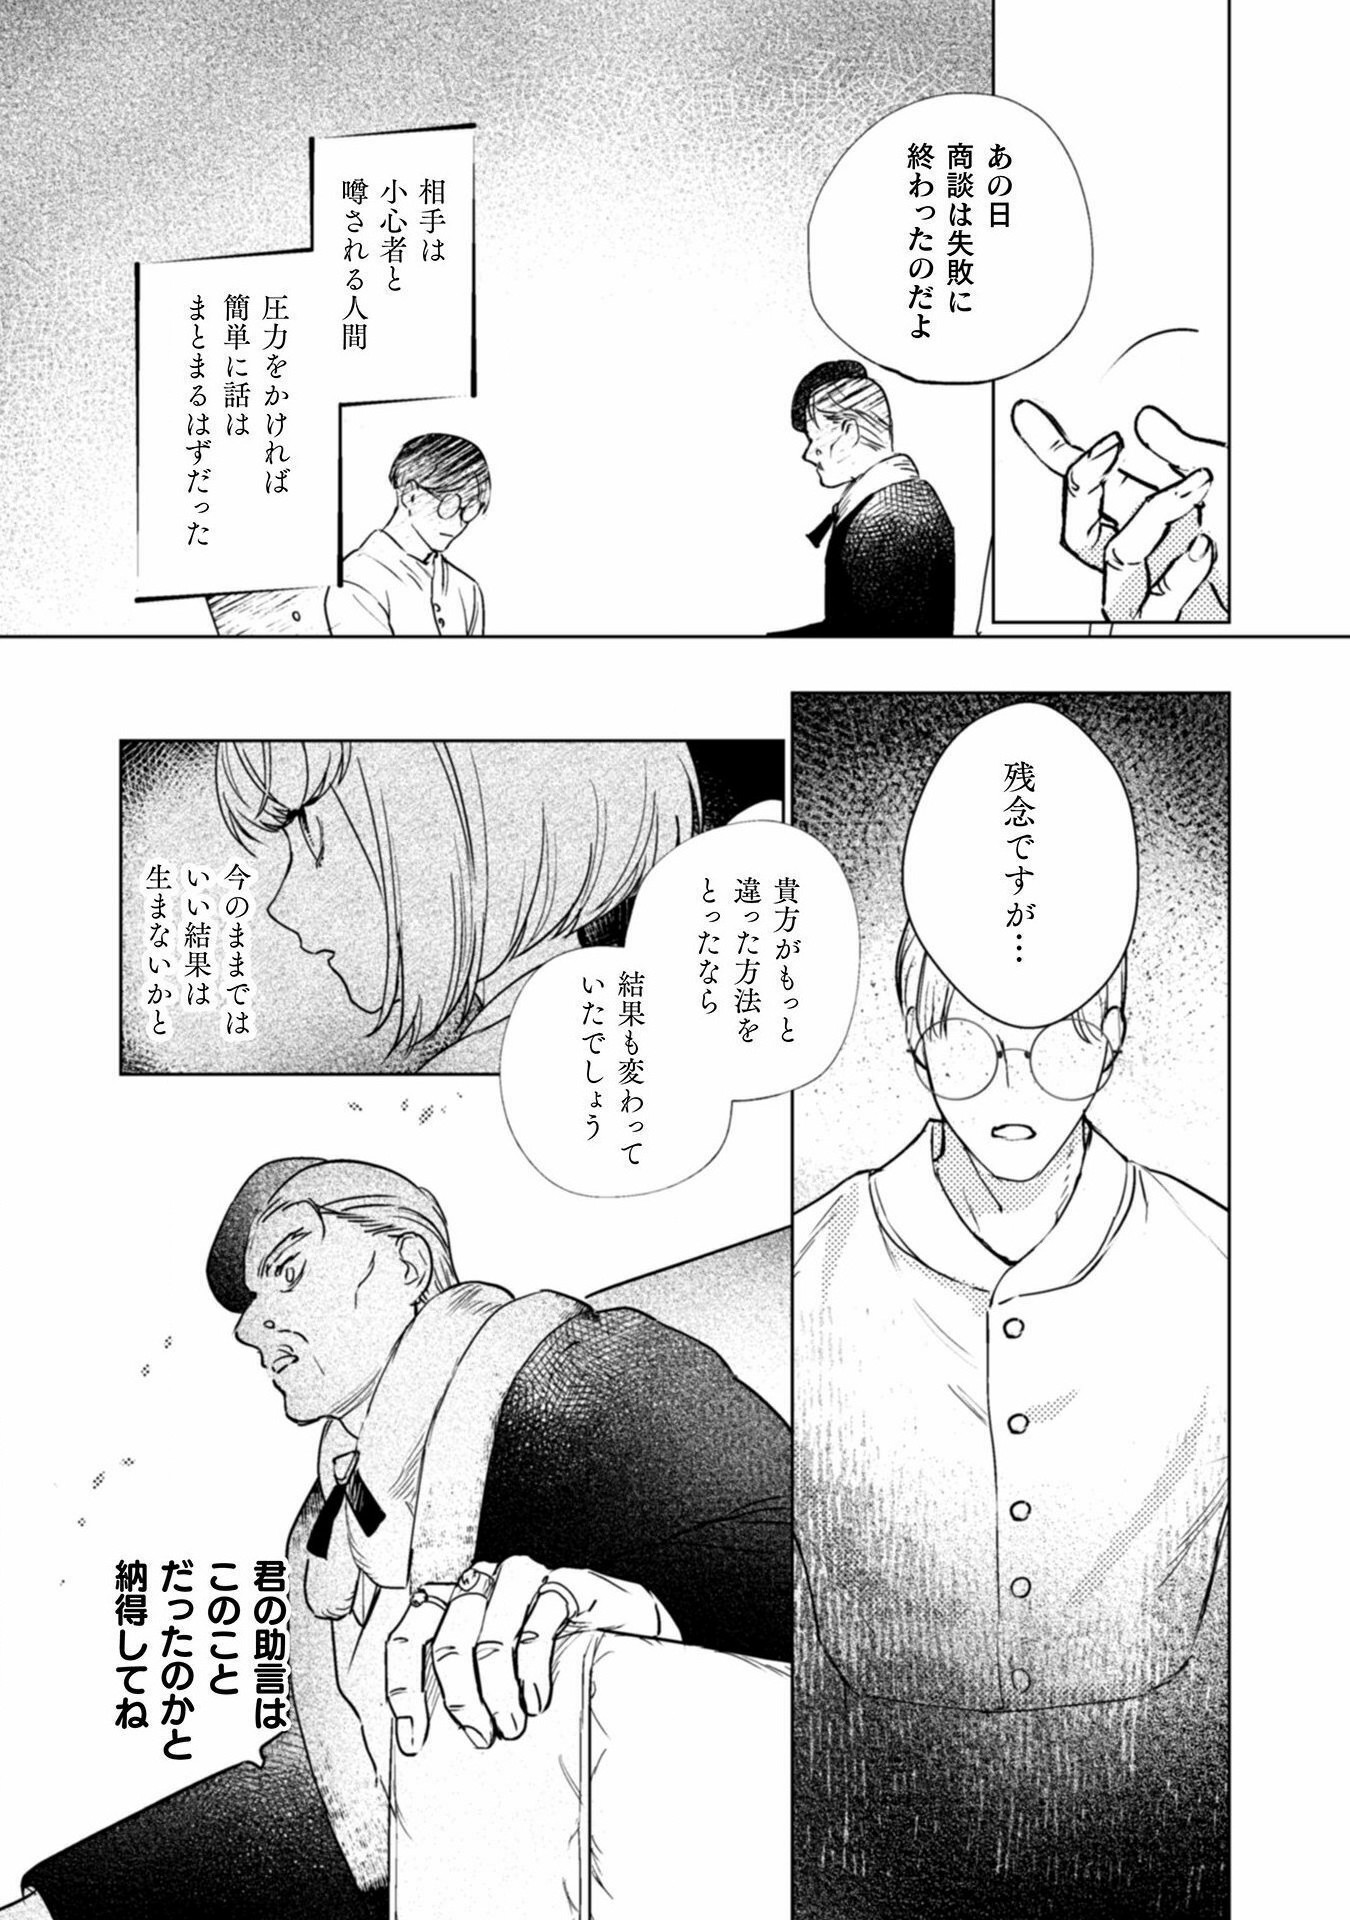 Uranaishi ni wa Hana Kishi no Koigokoro ga Mieteimasu - Chapter 18 - Page 3